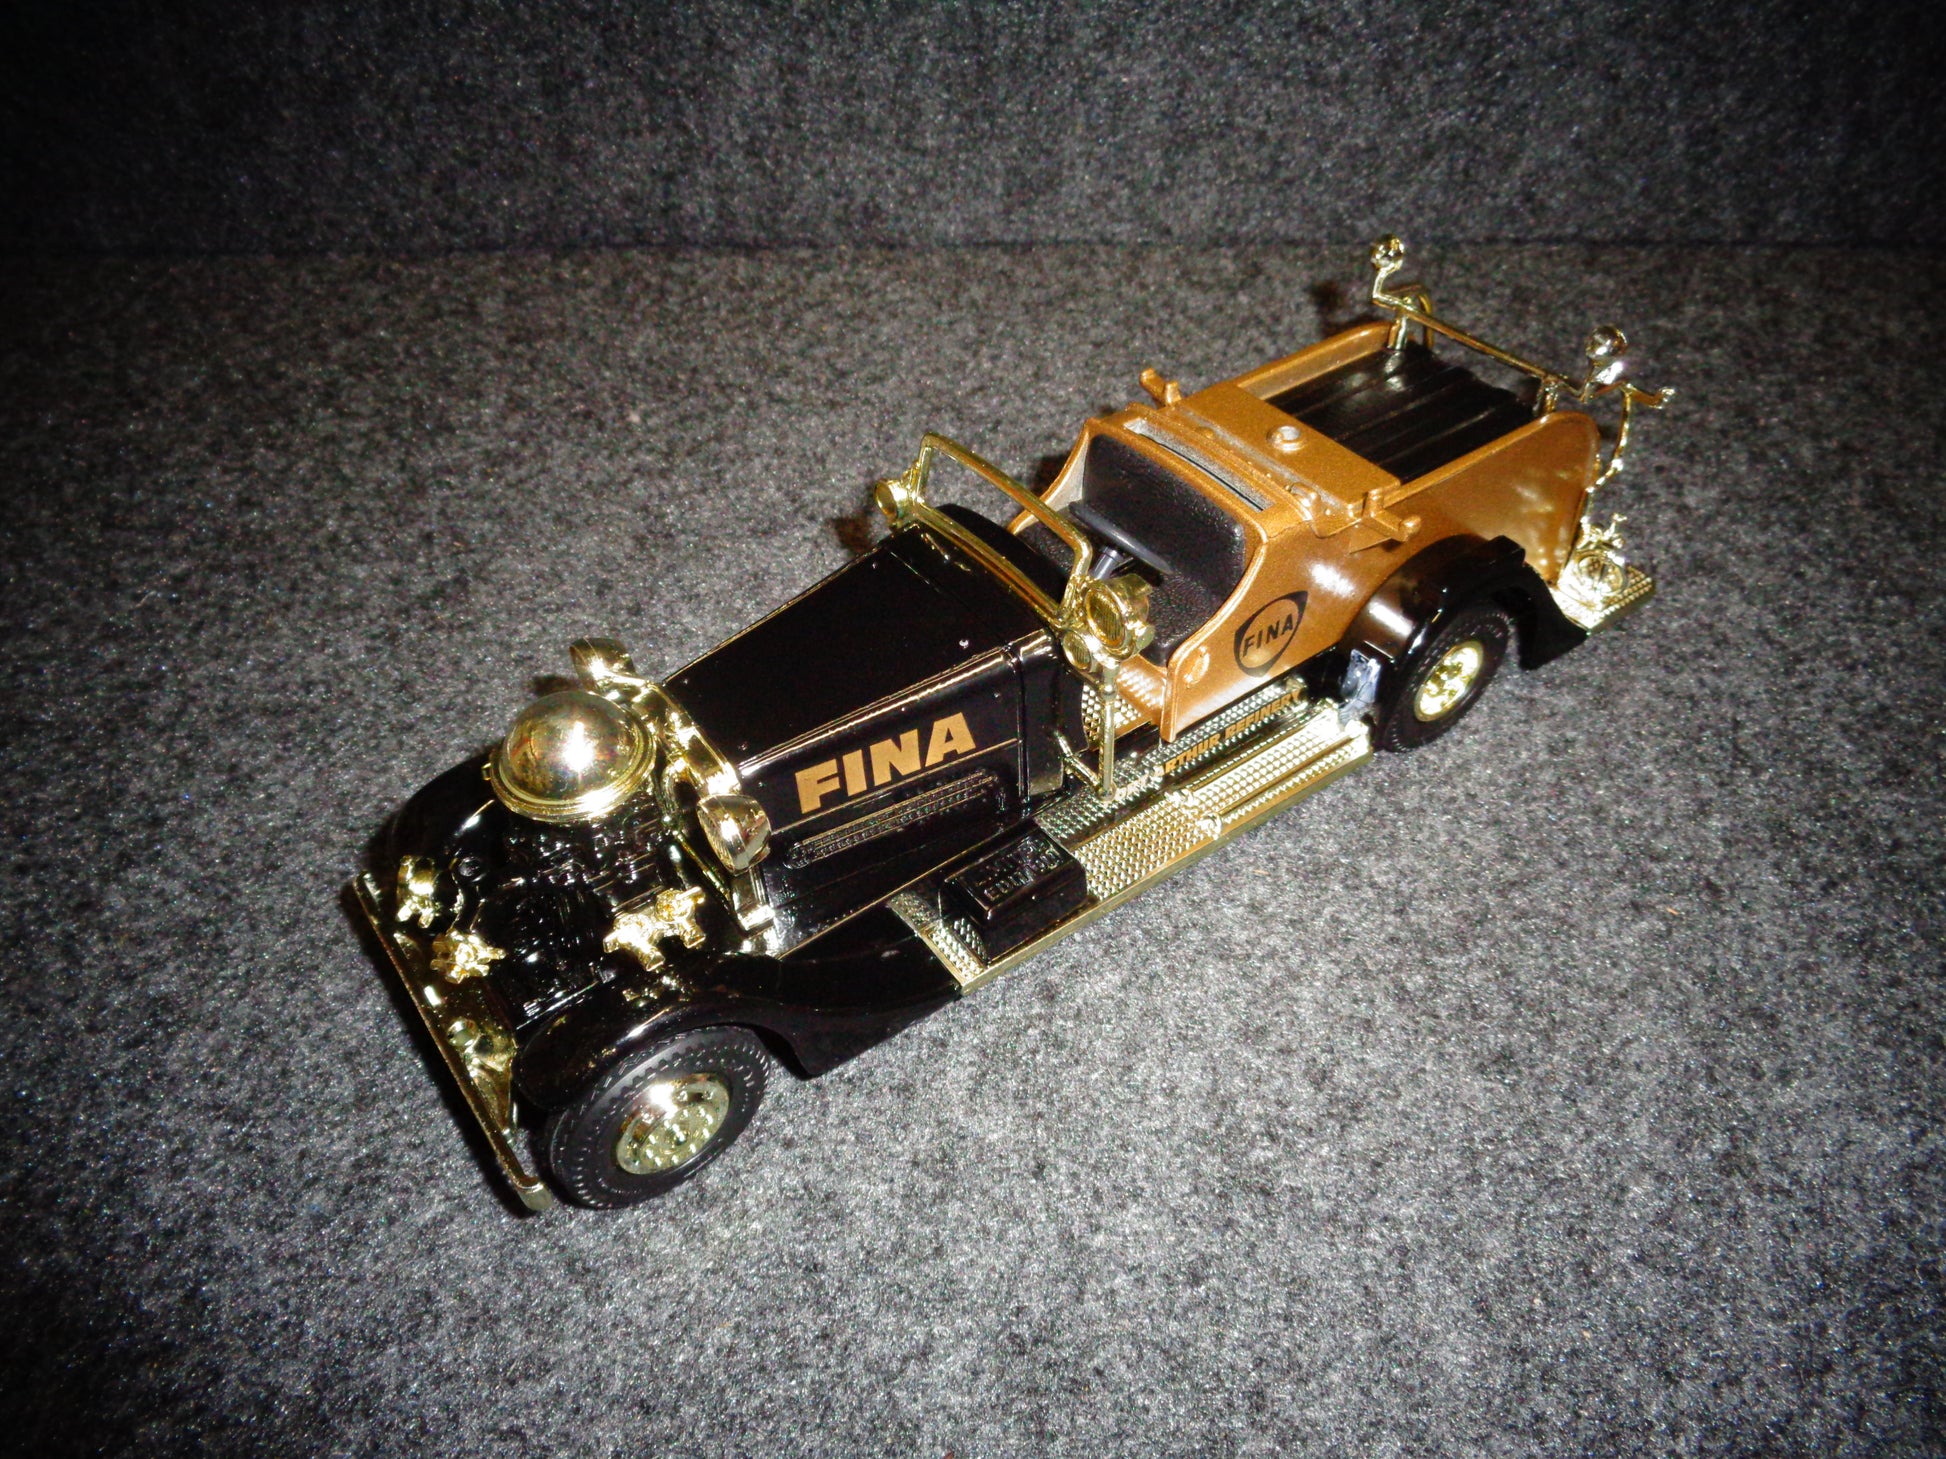 Fina 1937 Ahrens-Fox Fire Truck